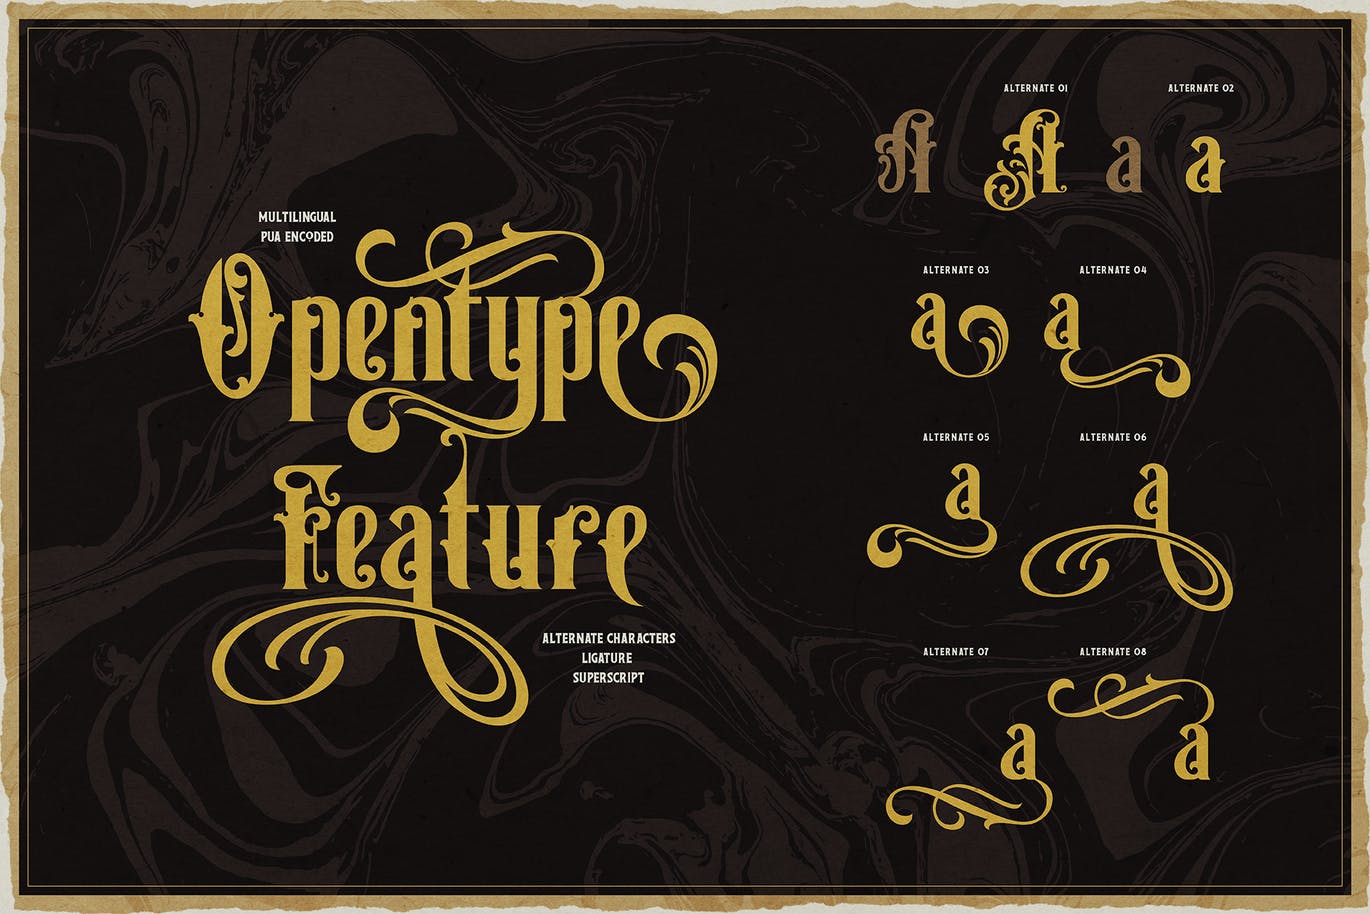 复古维多利亚版式设计衬线字体素材 Victorian Letterhead 设计素材 第4张